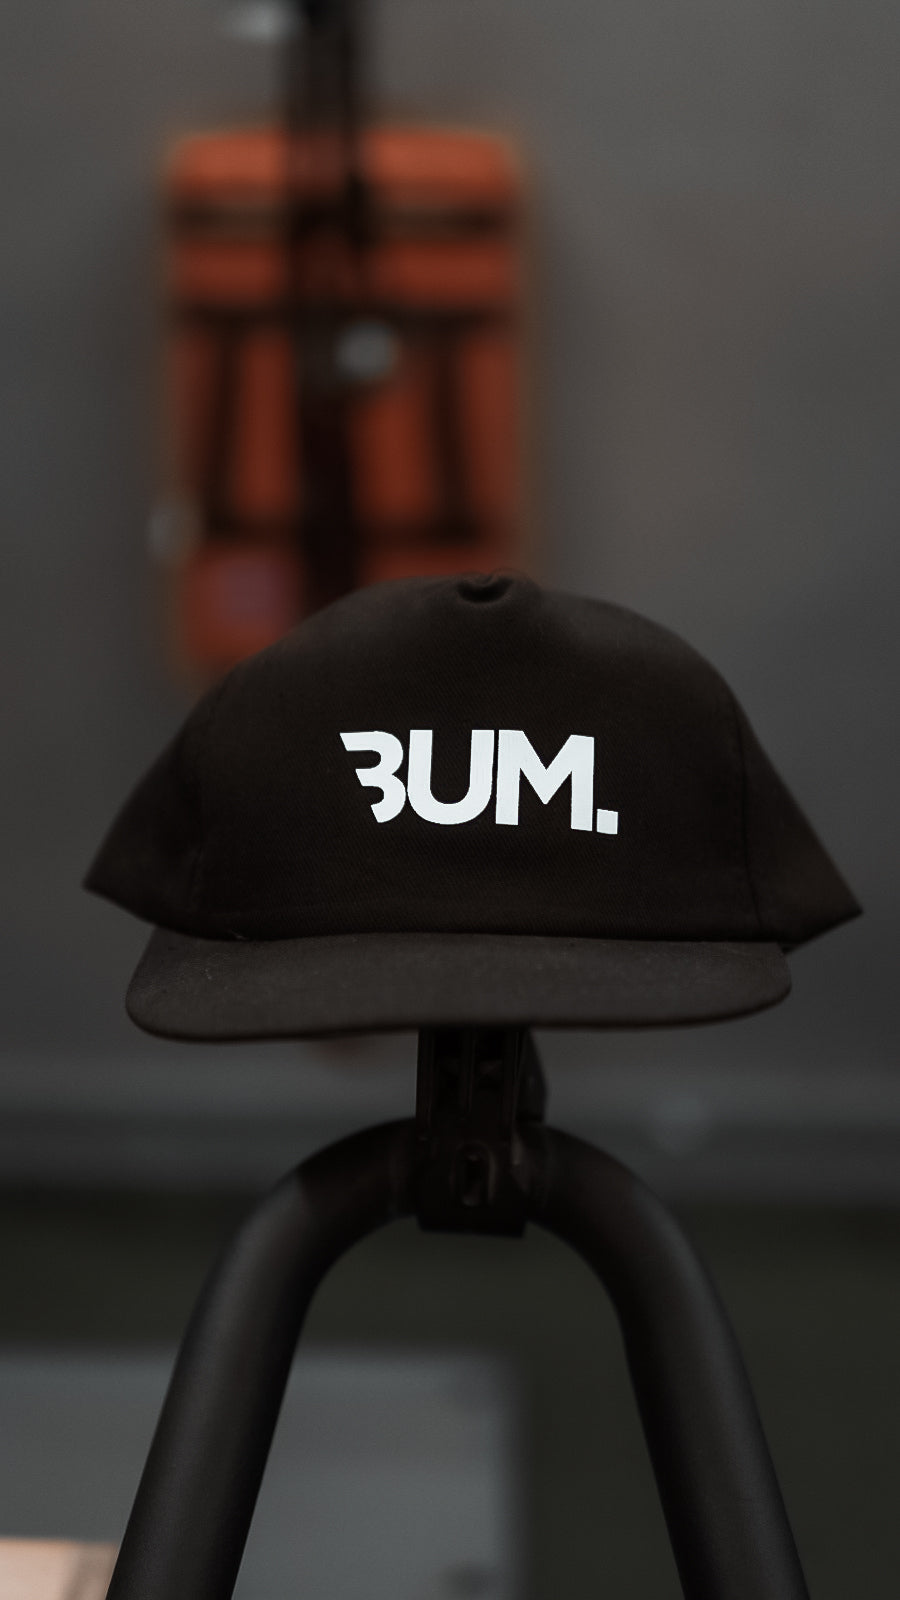 Cbum T-Shirt and Cap | SALE BUNDLE